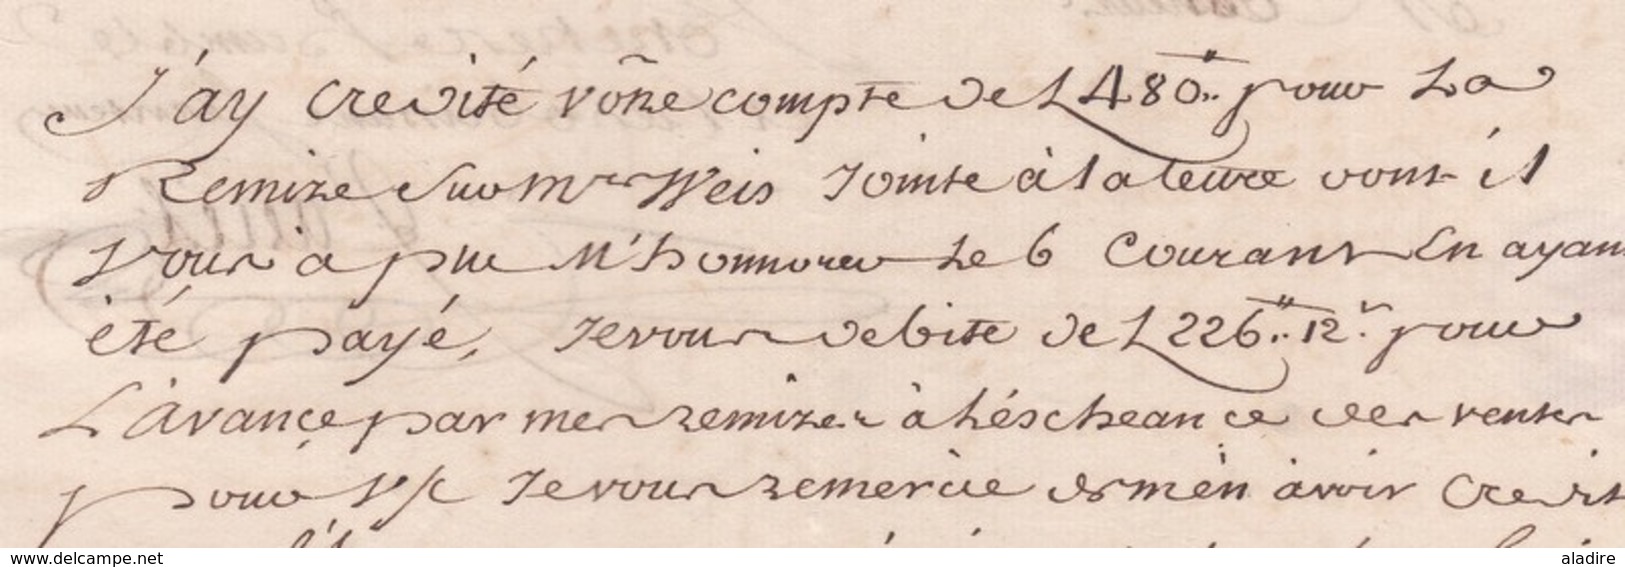 1754 - Marque postale  La Rochelle, auj. Charente Maritime sur LAC vers Montauban, auj .Tarn et Garonne